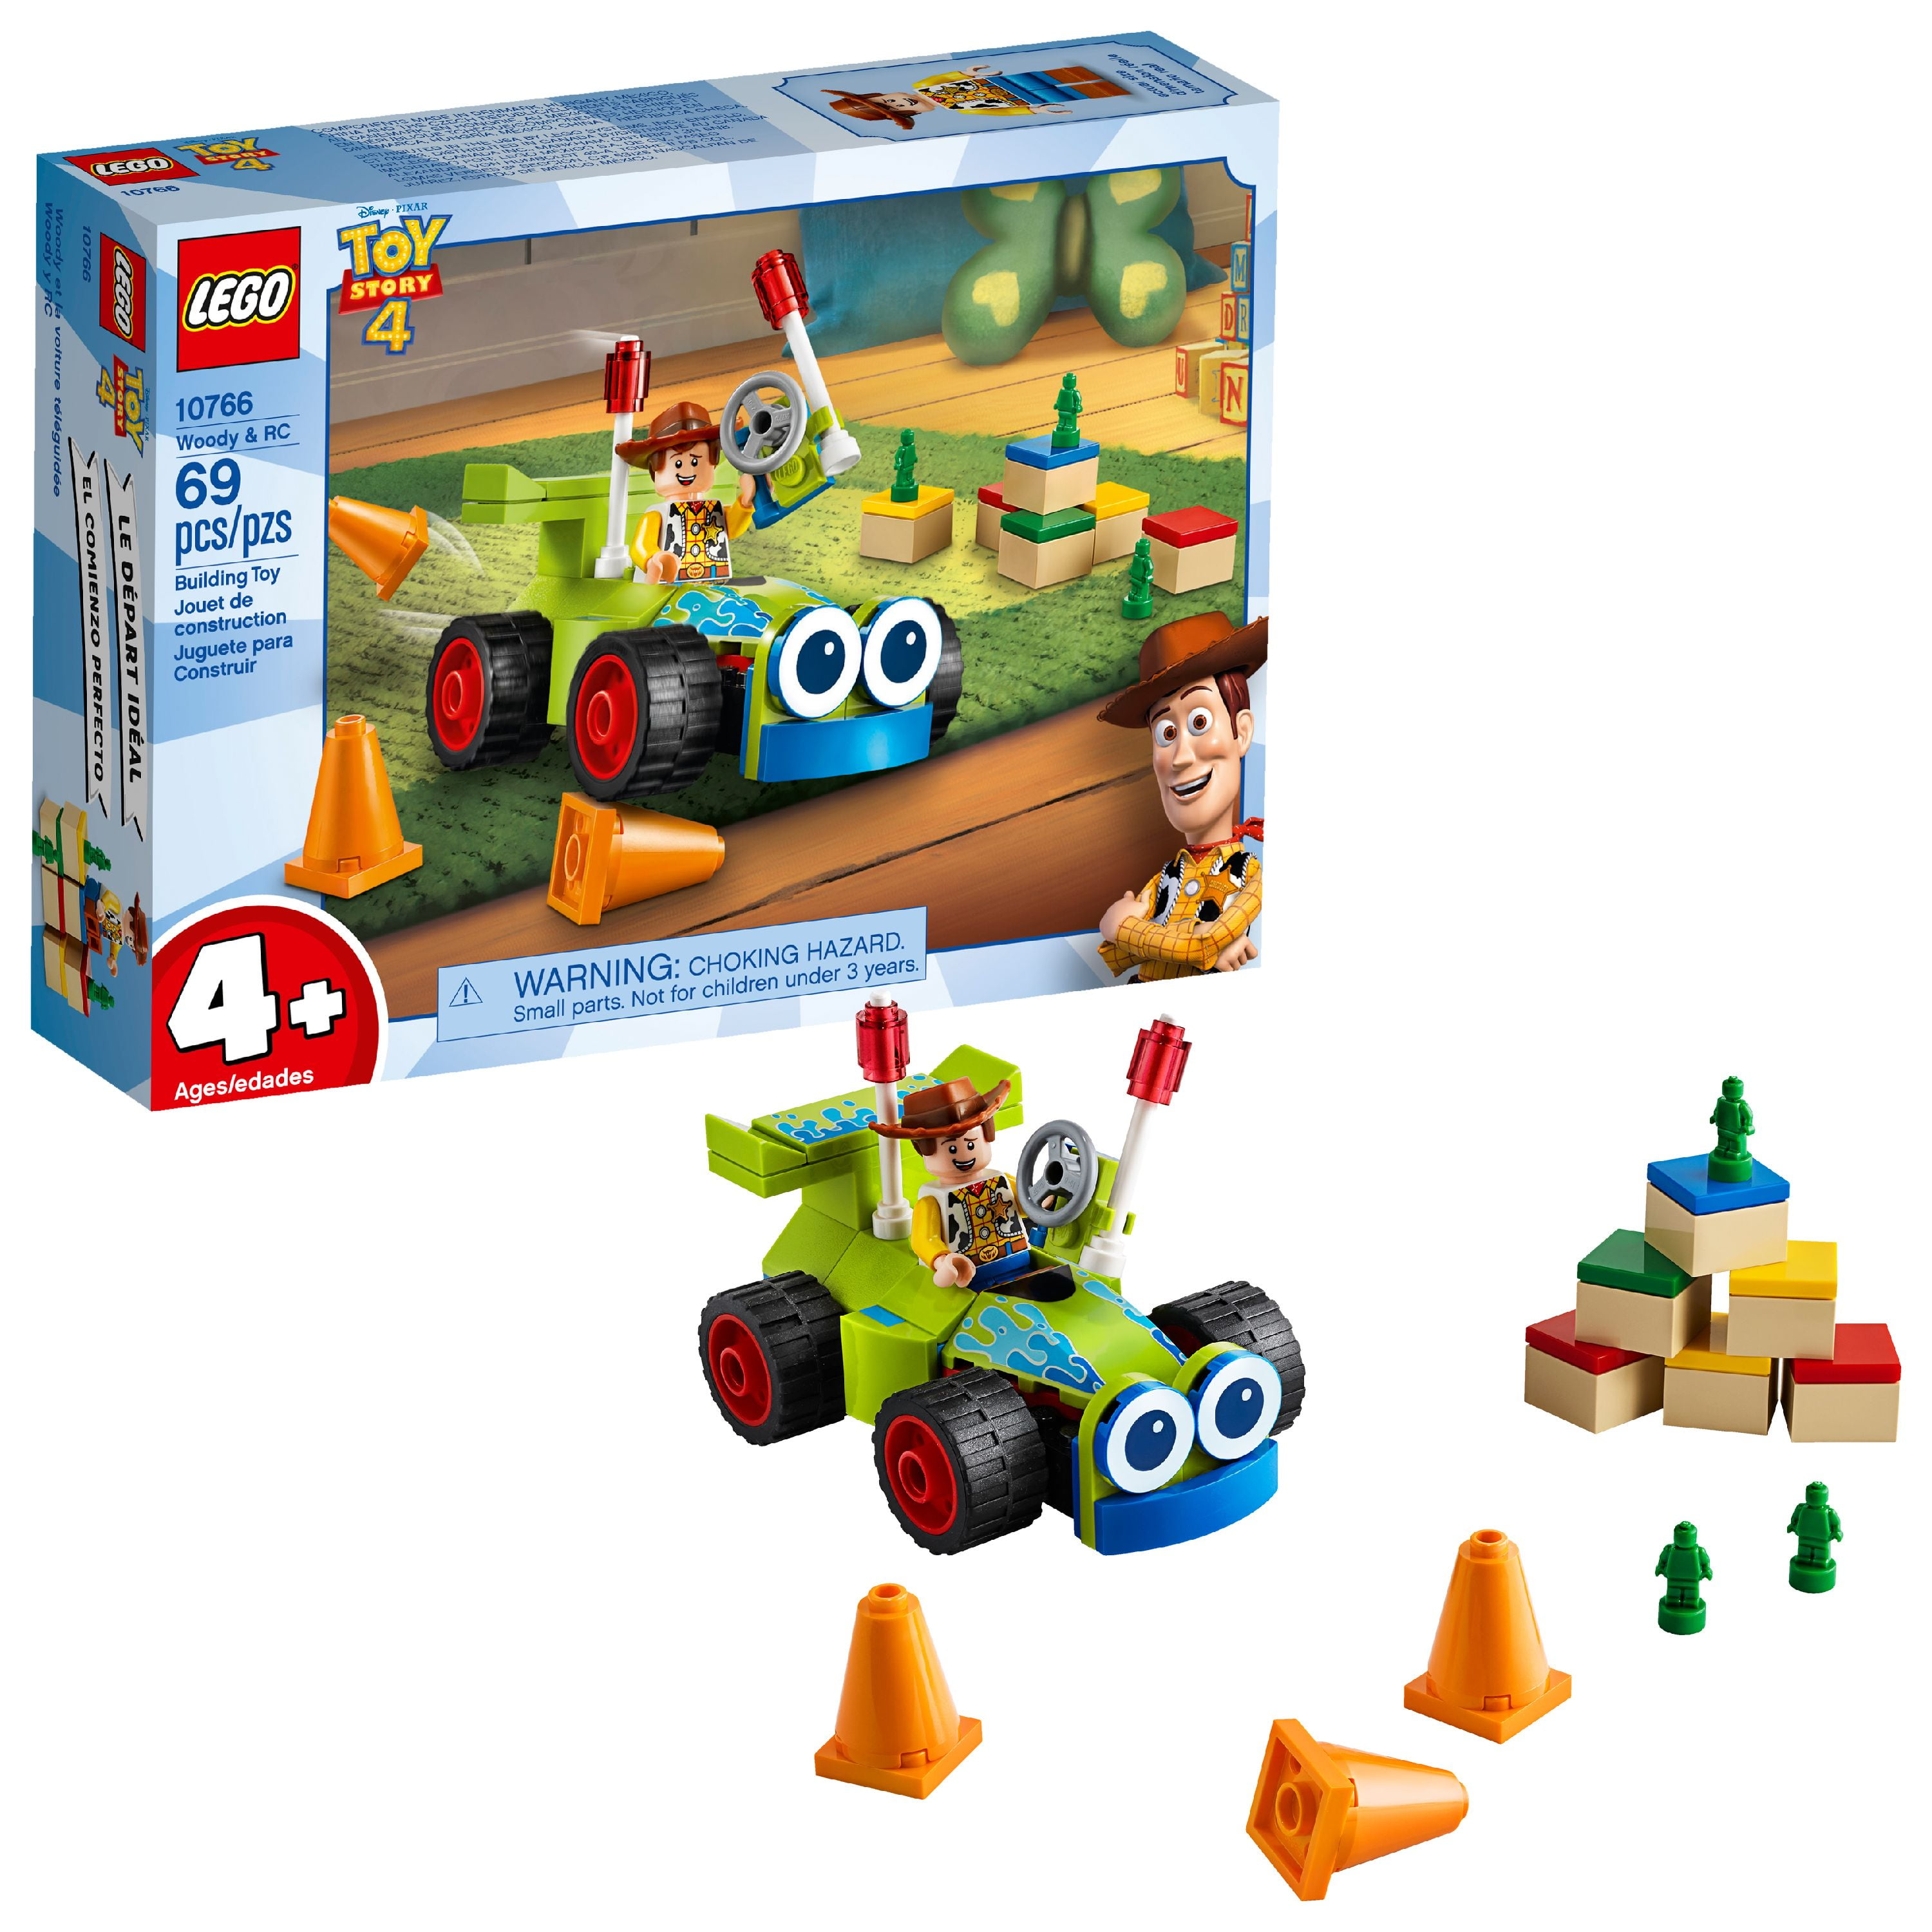 Seks Tilfredsstille moronic LEGO Toy Story 4 Woody & RC Building Set, Age 4+ - Walmart.com